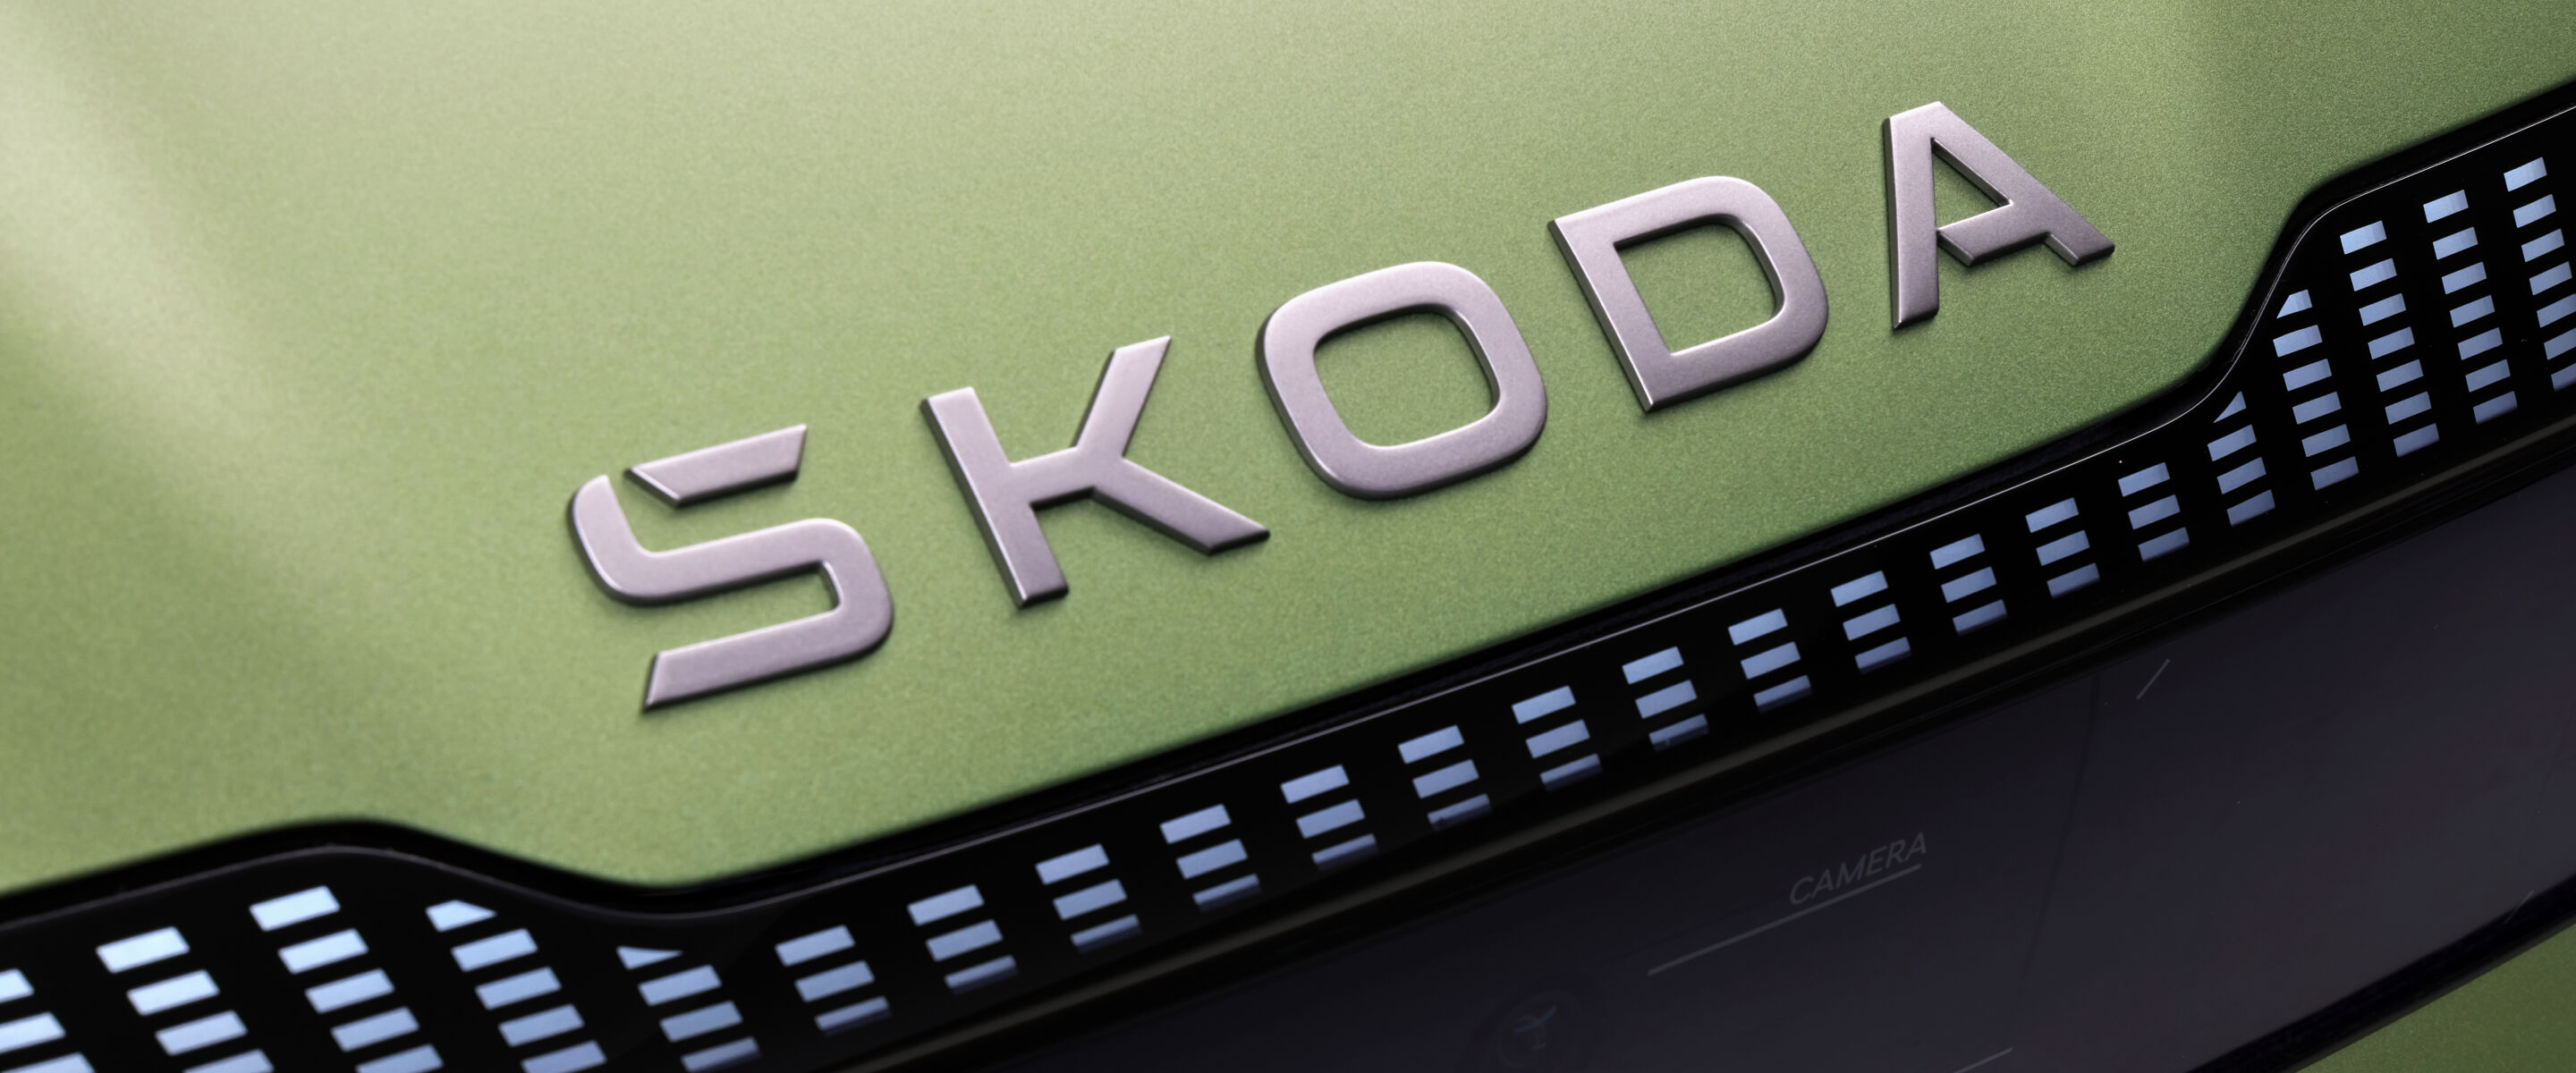 Škoda lanceert nieuwe merkidentiteit en zet elektrificatiestrategie in een hogere versnelling